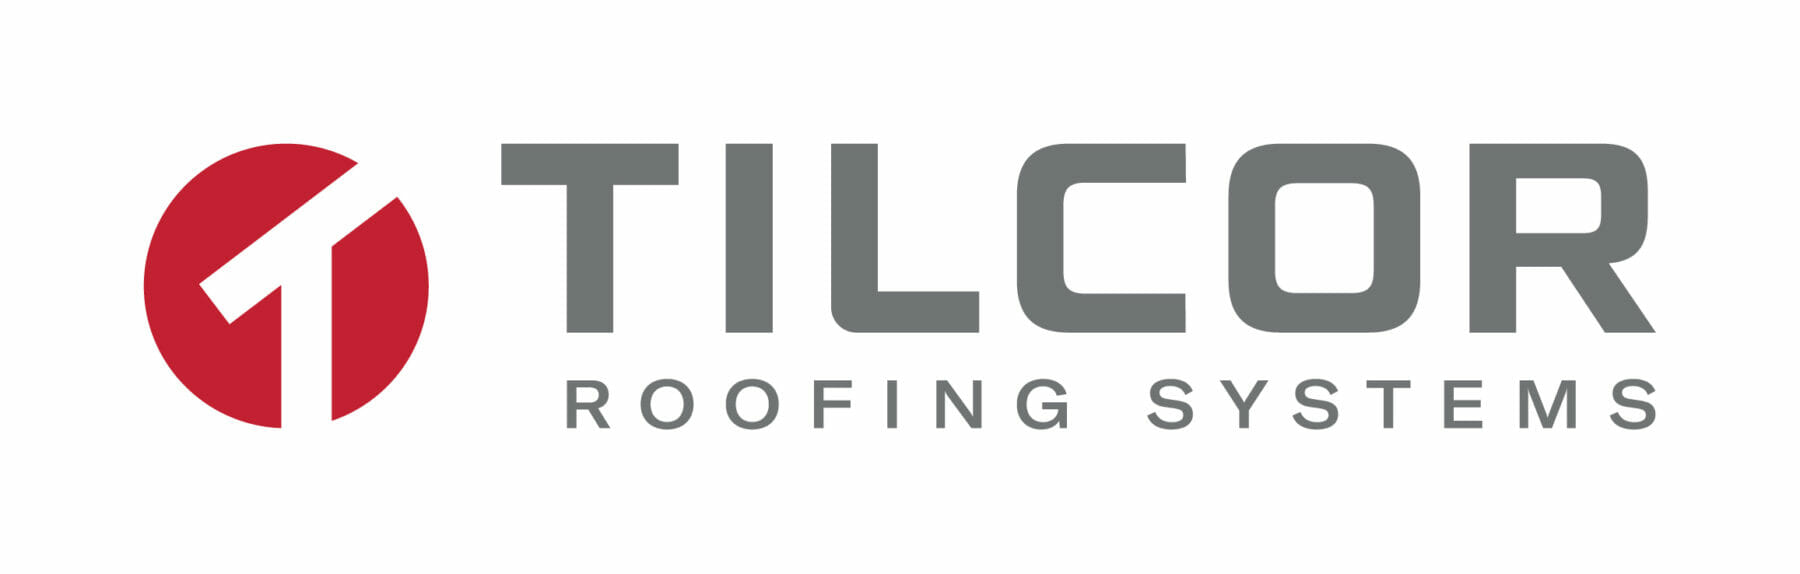 Tilcor logo